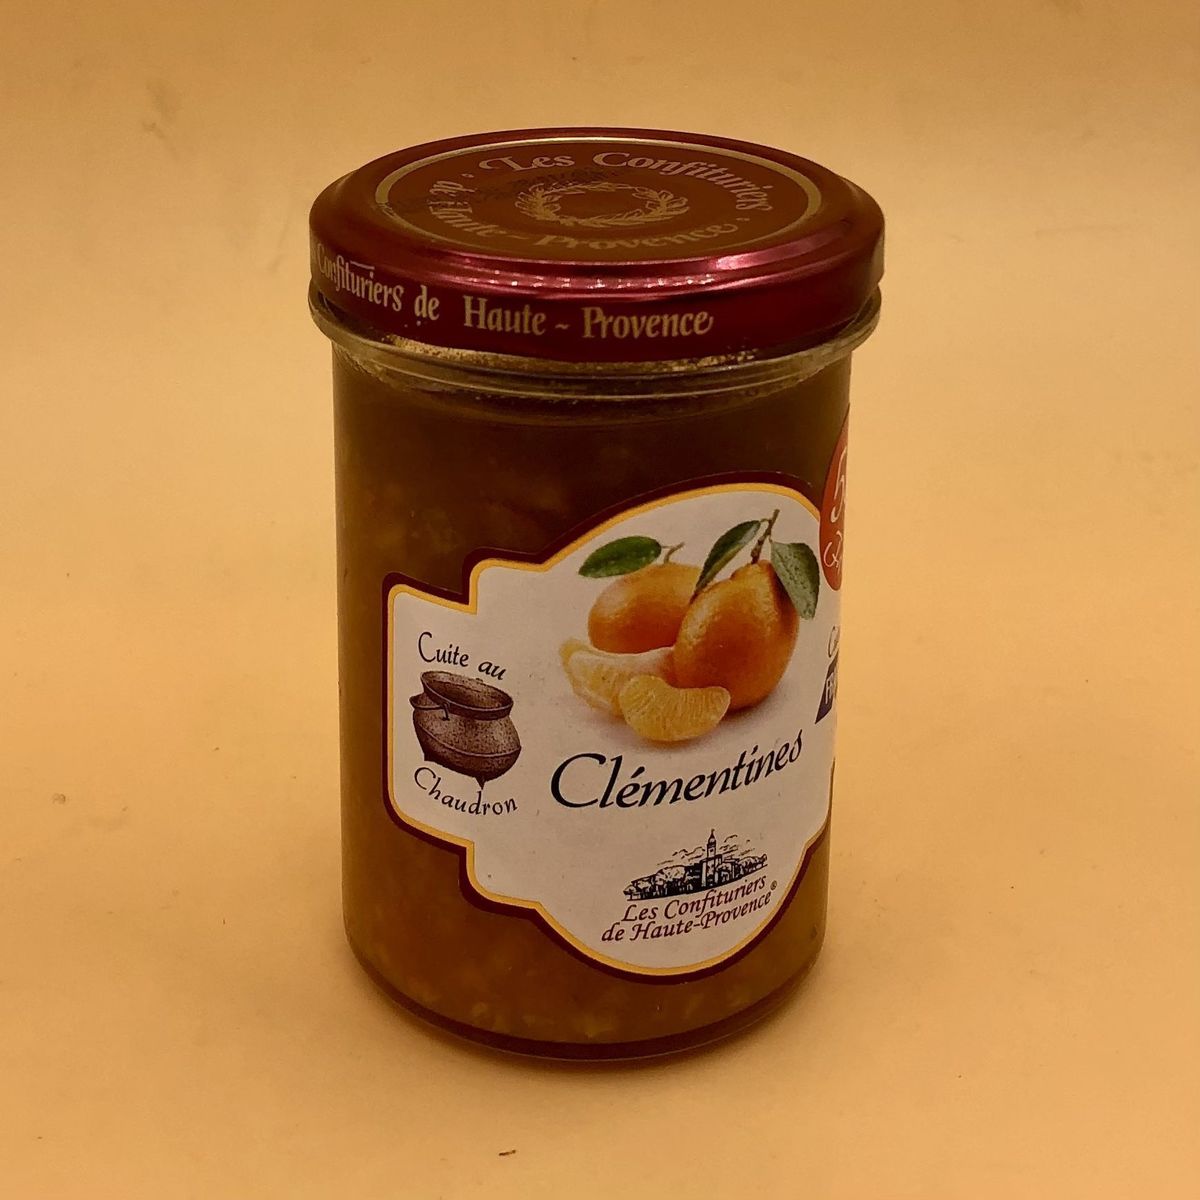 Джем Les Comtes de Provence из клементина 240г, 55% фруктов